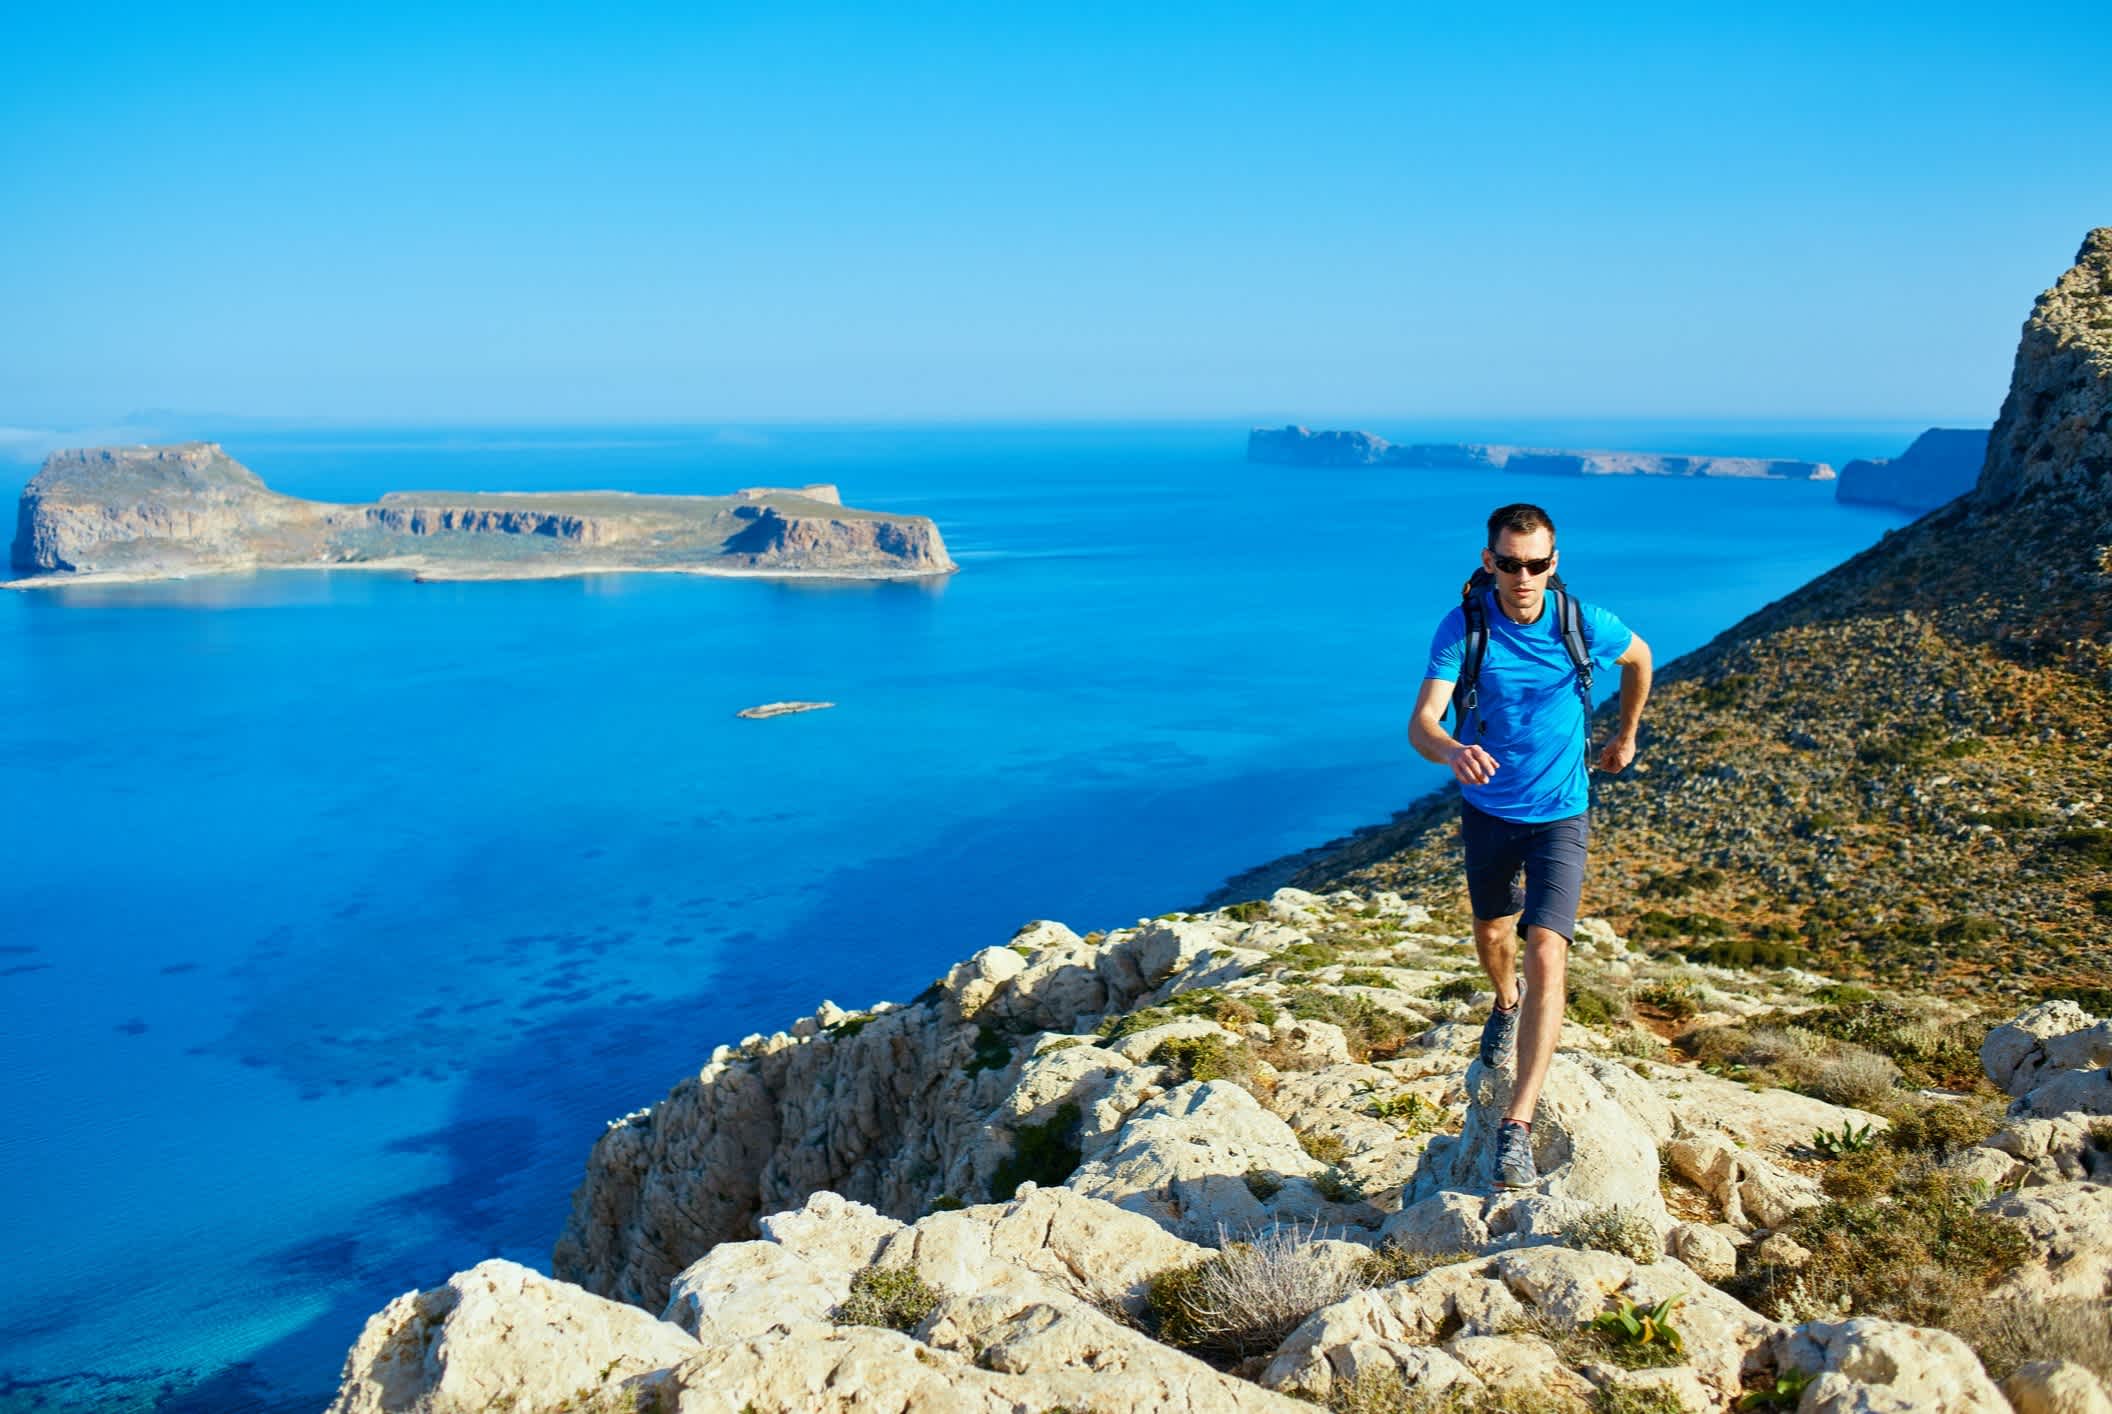 Ein Wanderer mit dem Balos Strand im Hintergrund, Kreta, Griechenland

